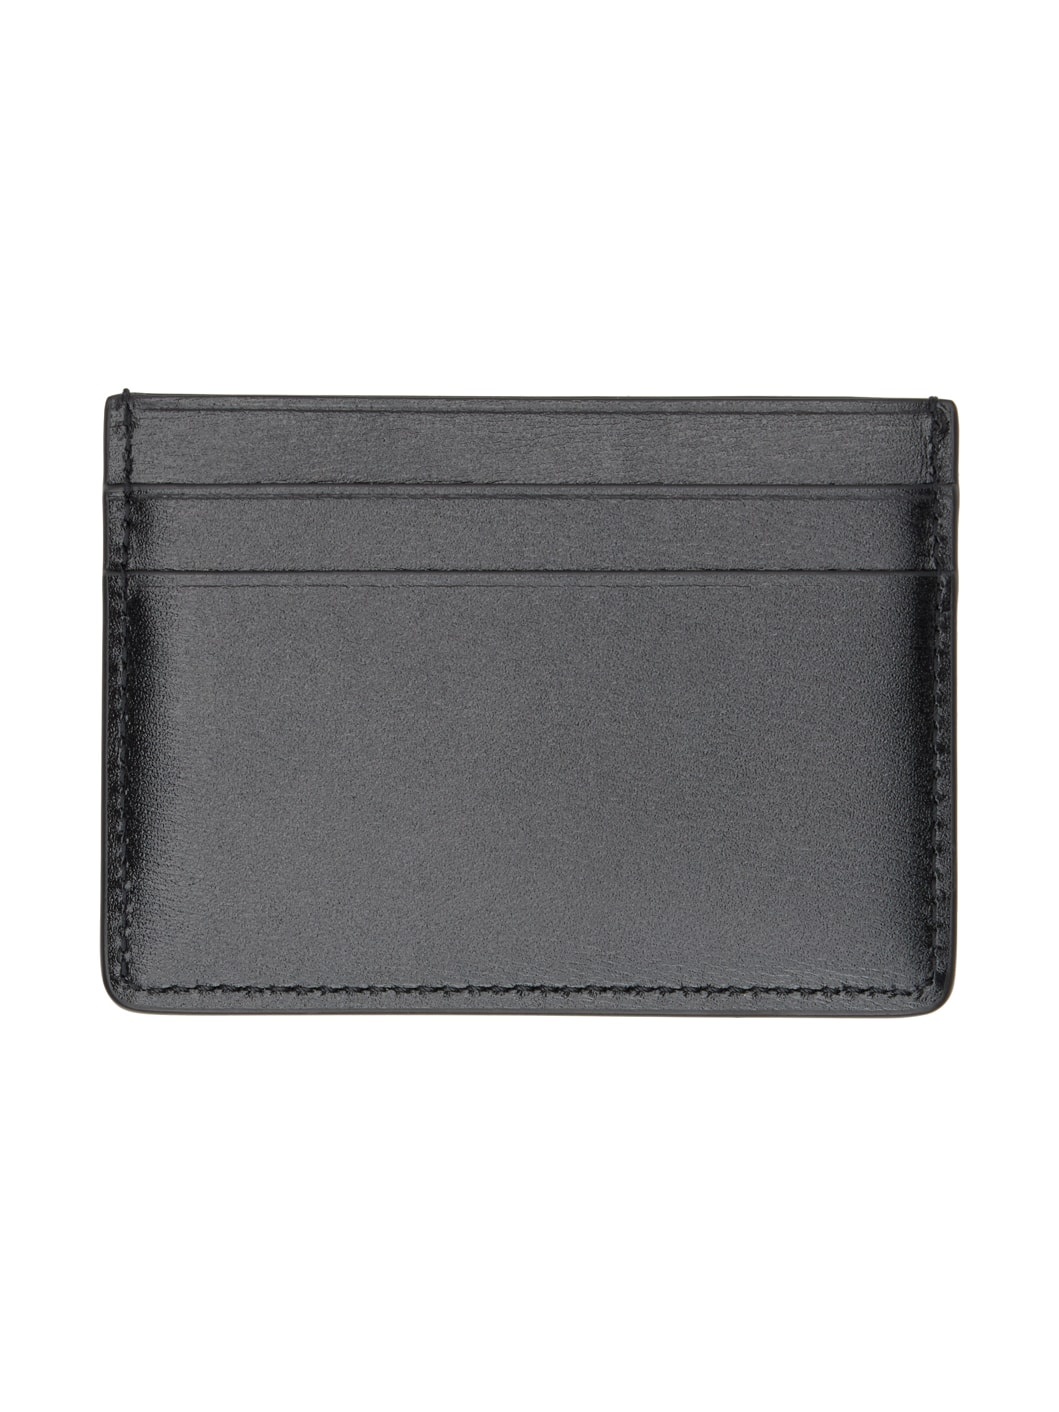 Black Credit Card Holder - 2